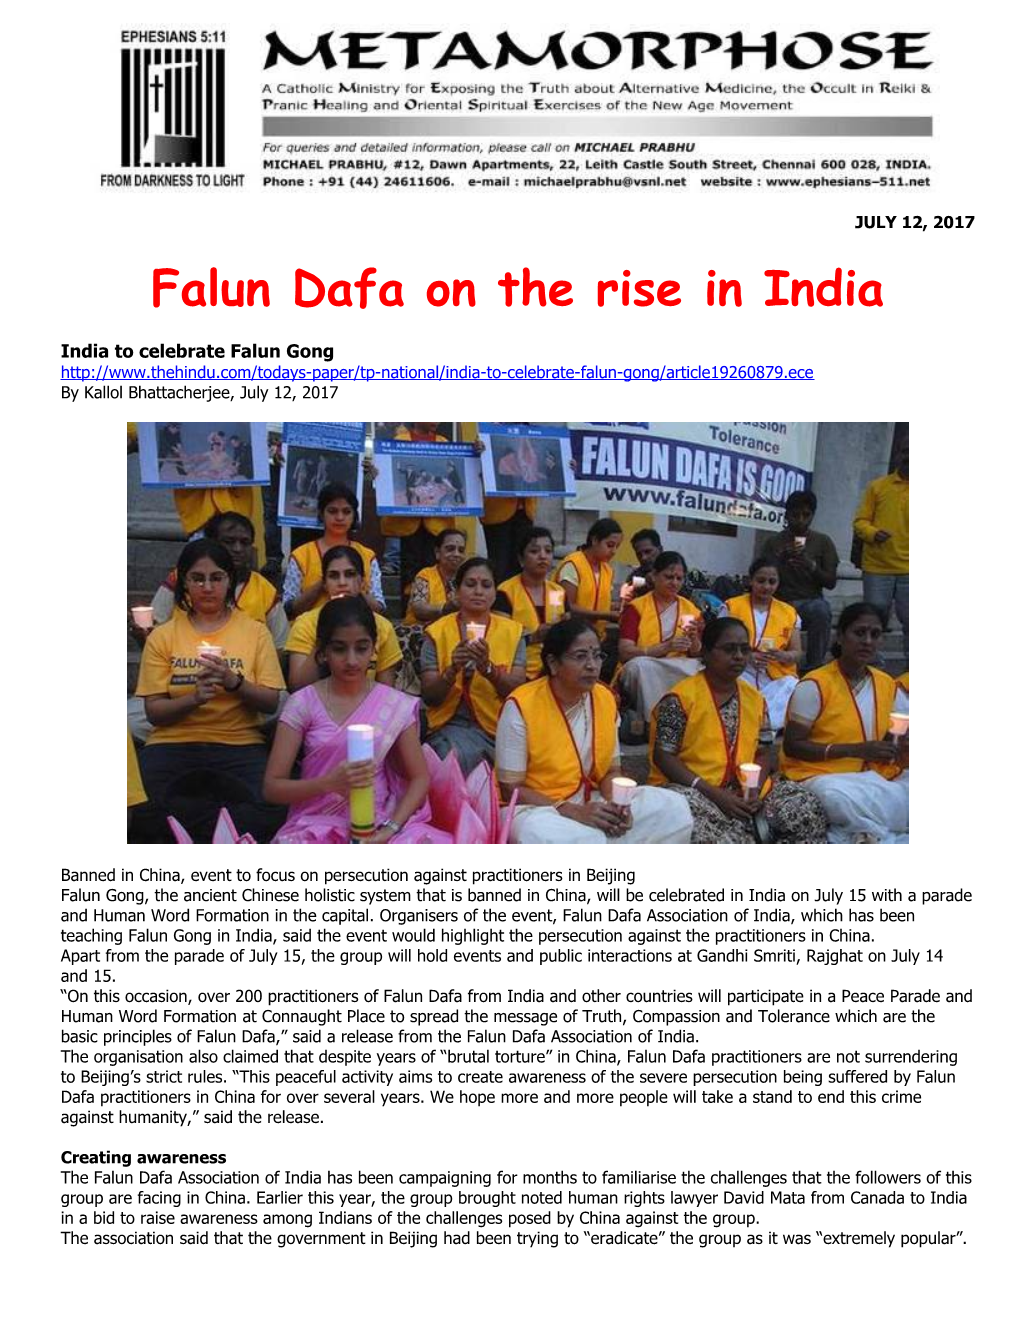 Falun Dafa on the Rise in India